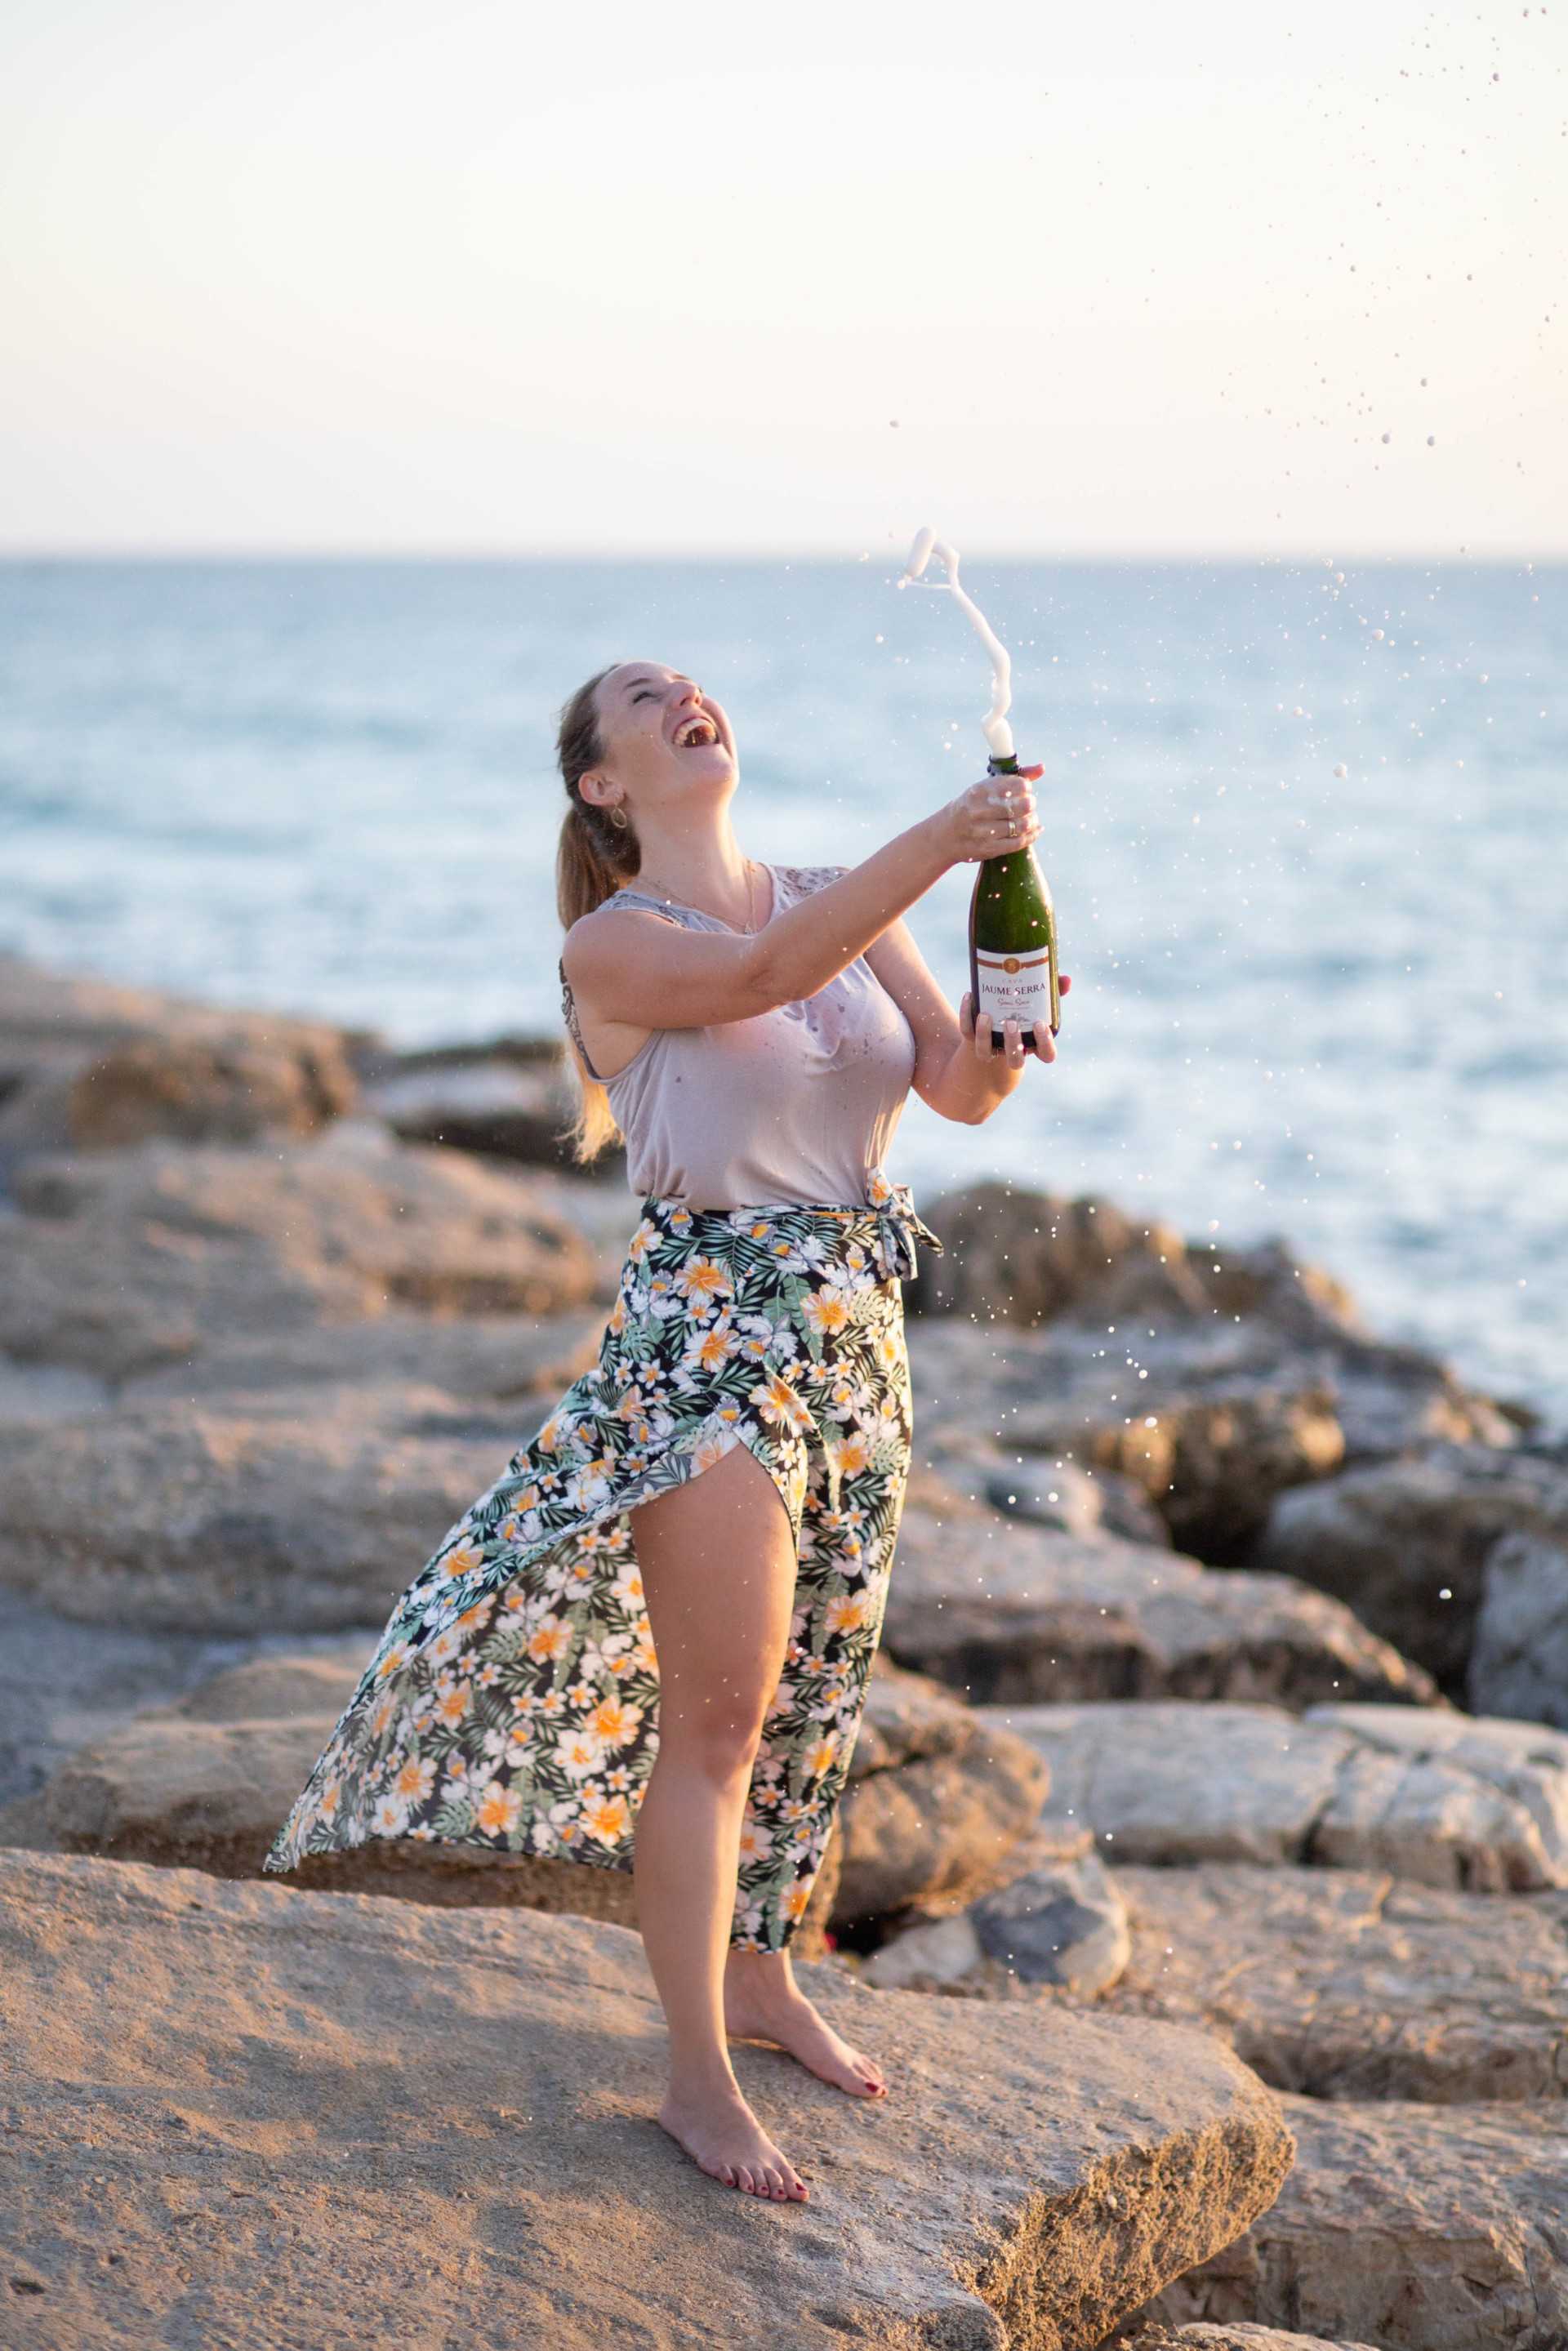 אני עומדת על סלעים בחוף הים עם בקבוק יין